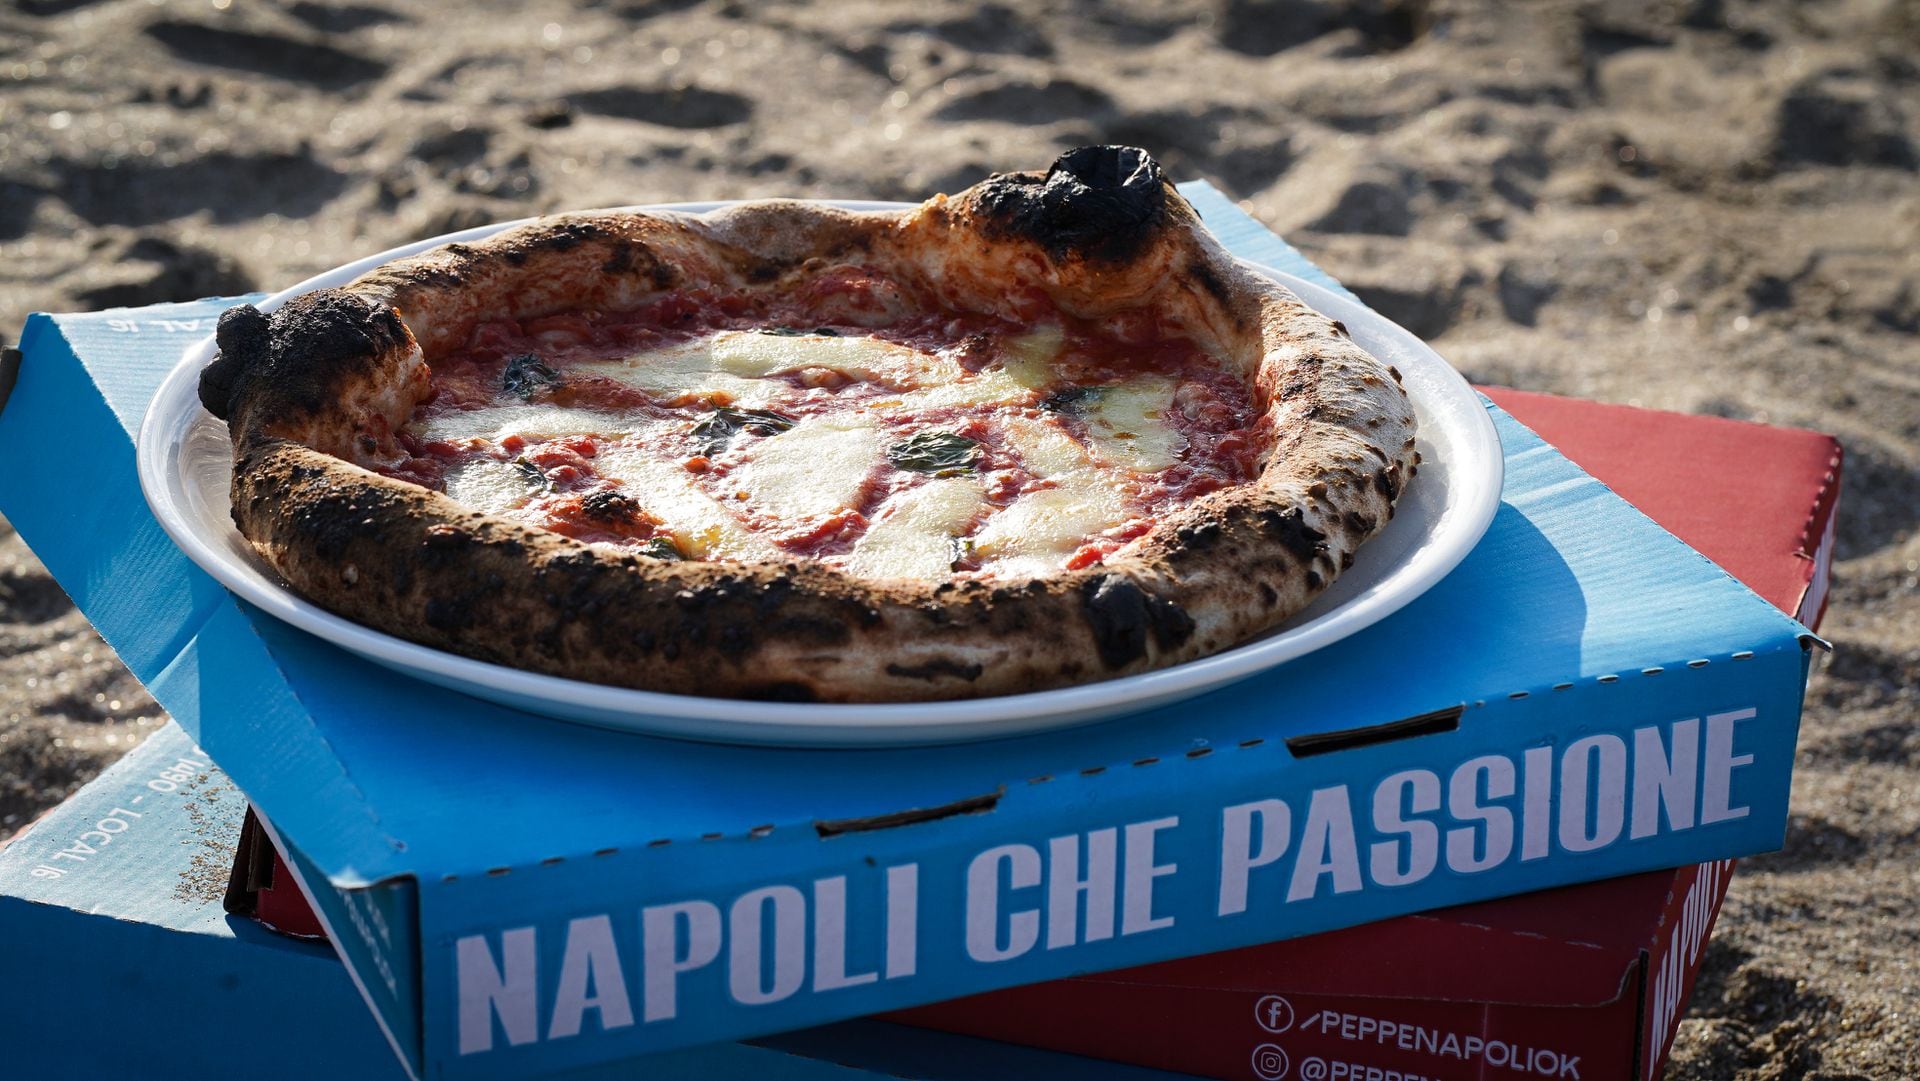 Finita y con bordes gruesos, poca levadura y larga fermentación, las pizzas de Peppe Napoli